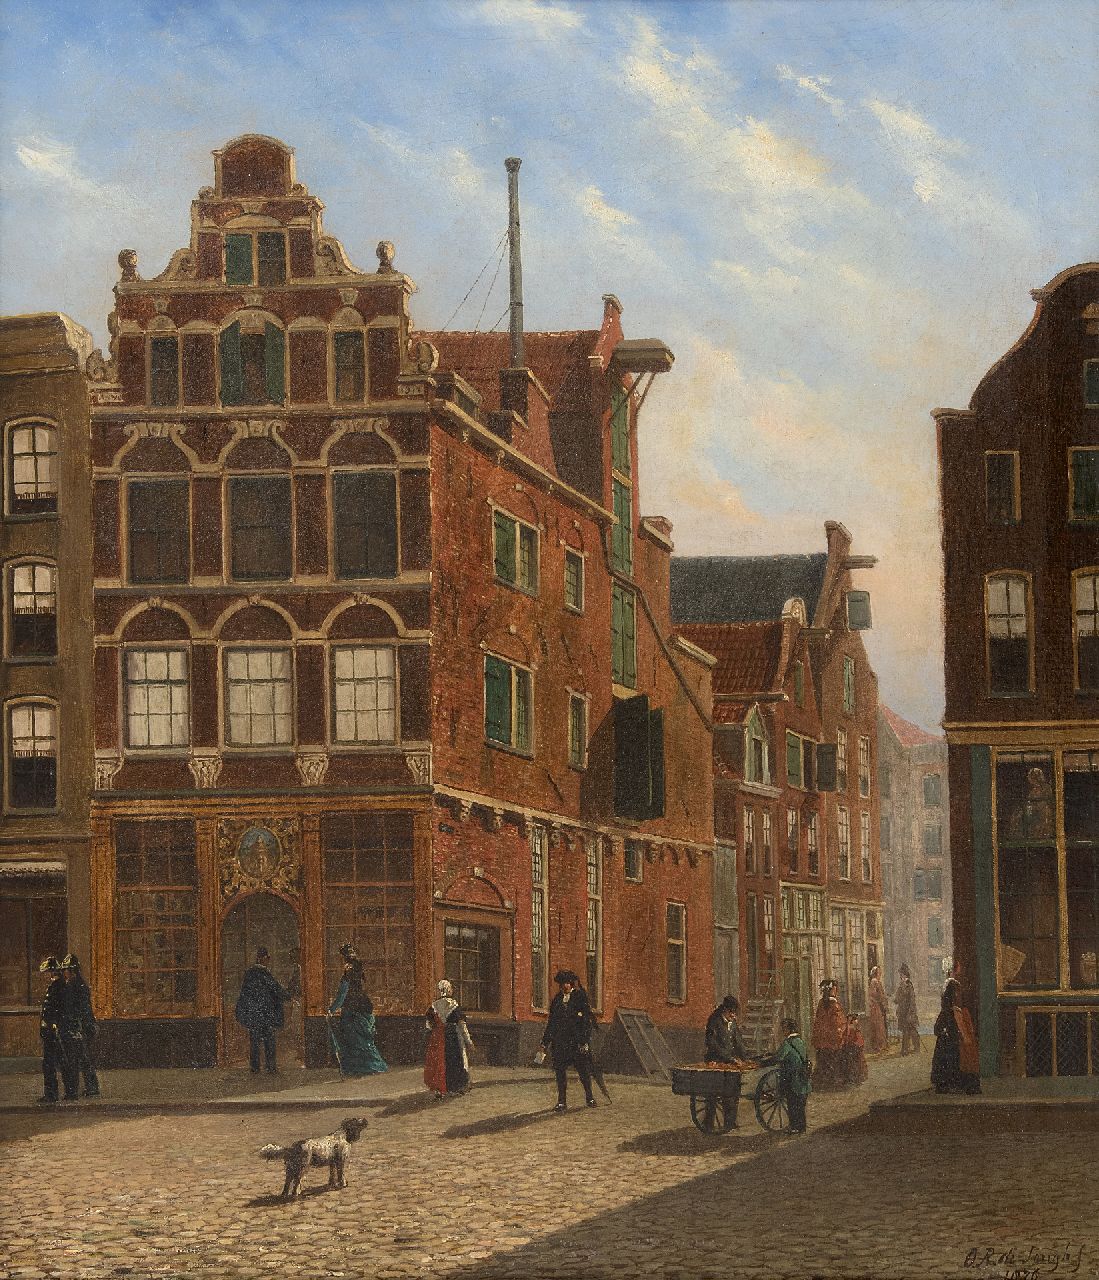 Jongh O.R. de | Oene Romkes de Jongh | Schilderijen te koop aangeboden | Hollands stadsgezicht, olieverf op doek 54,0 x 44,0 cm, gesigneerd rechtsonder en gedateerd 1876